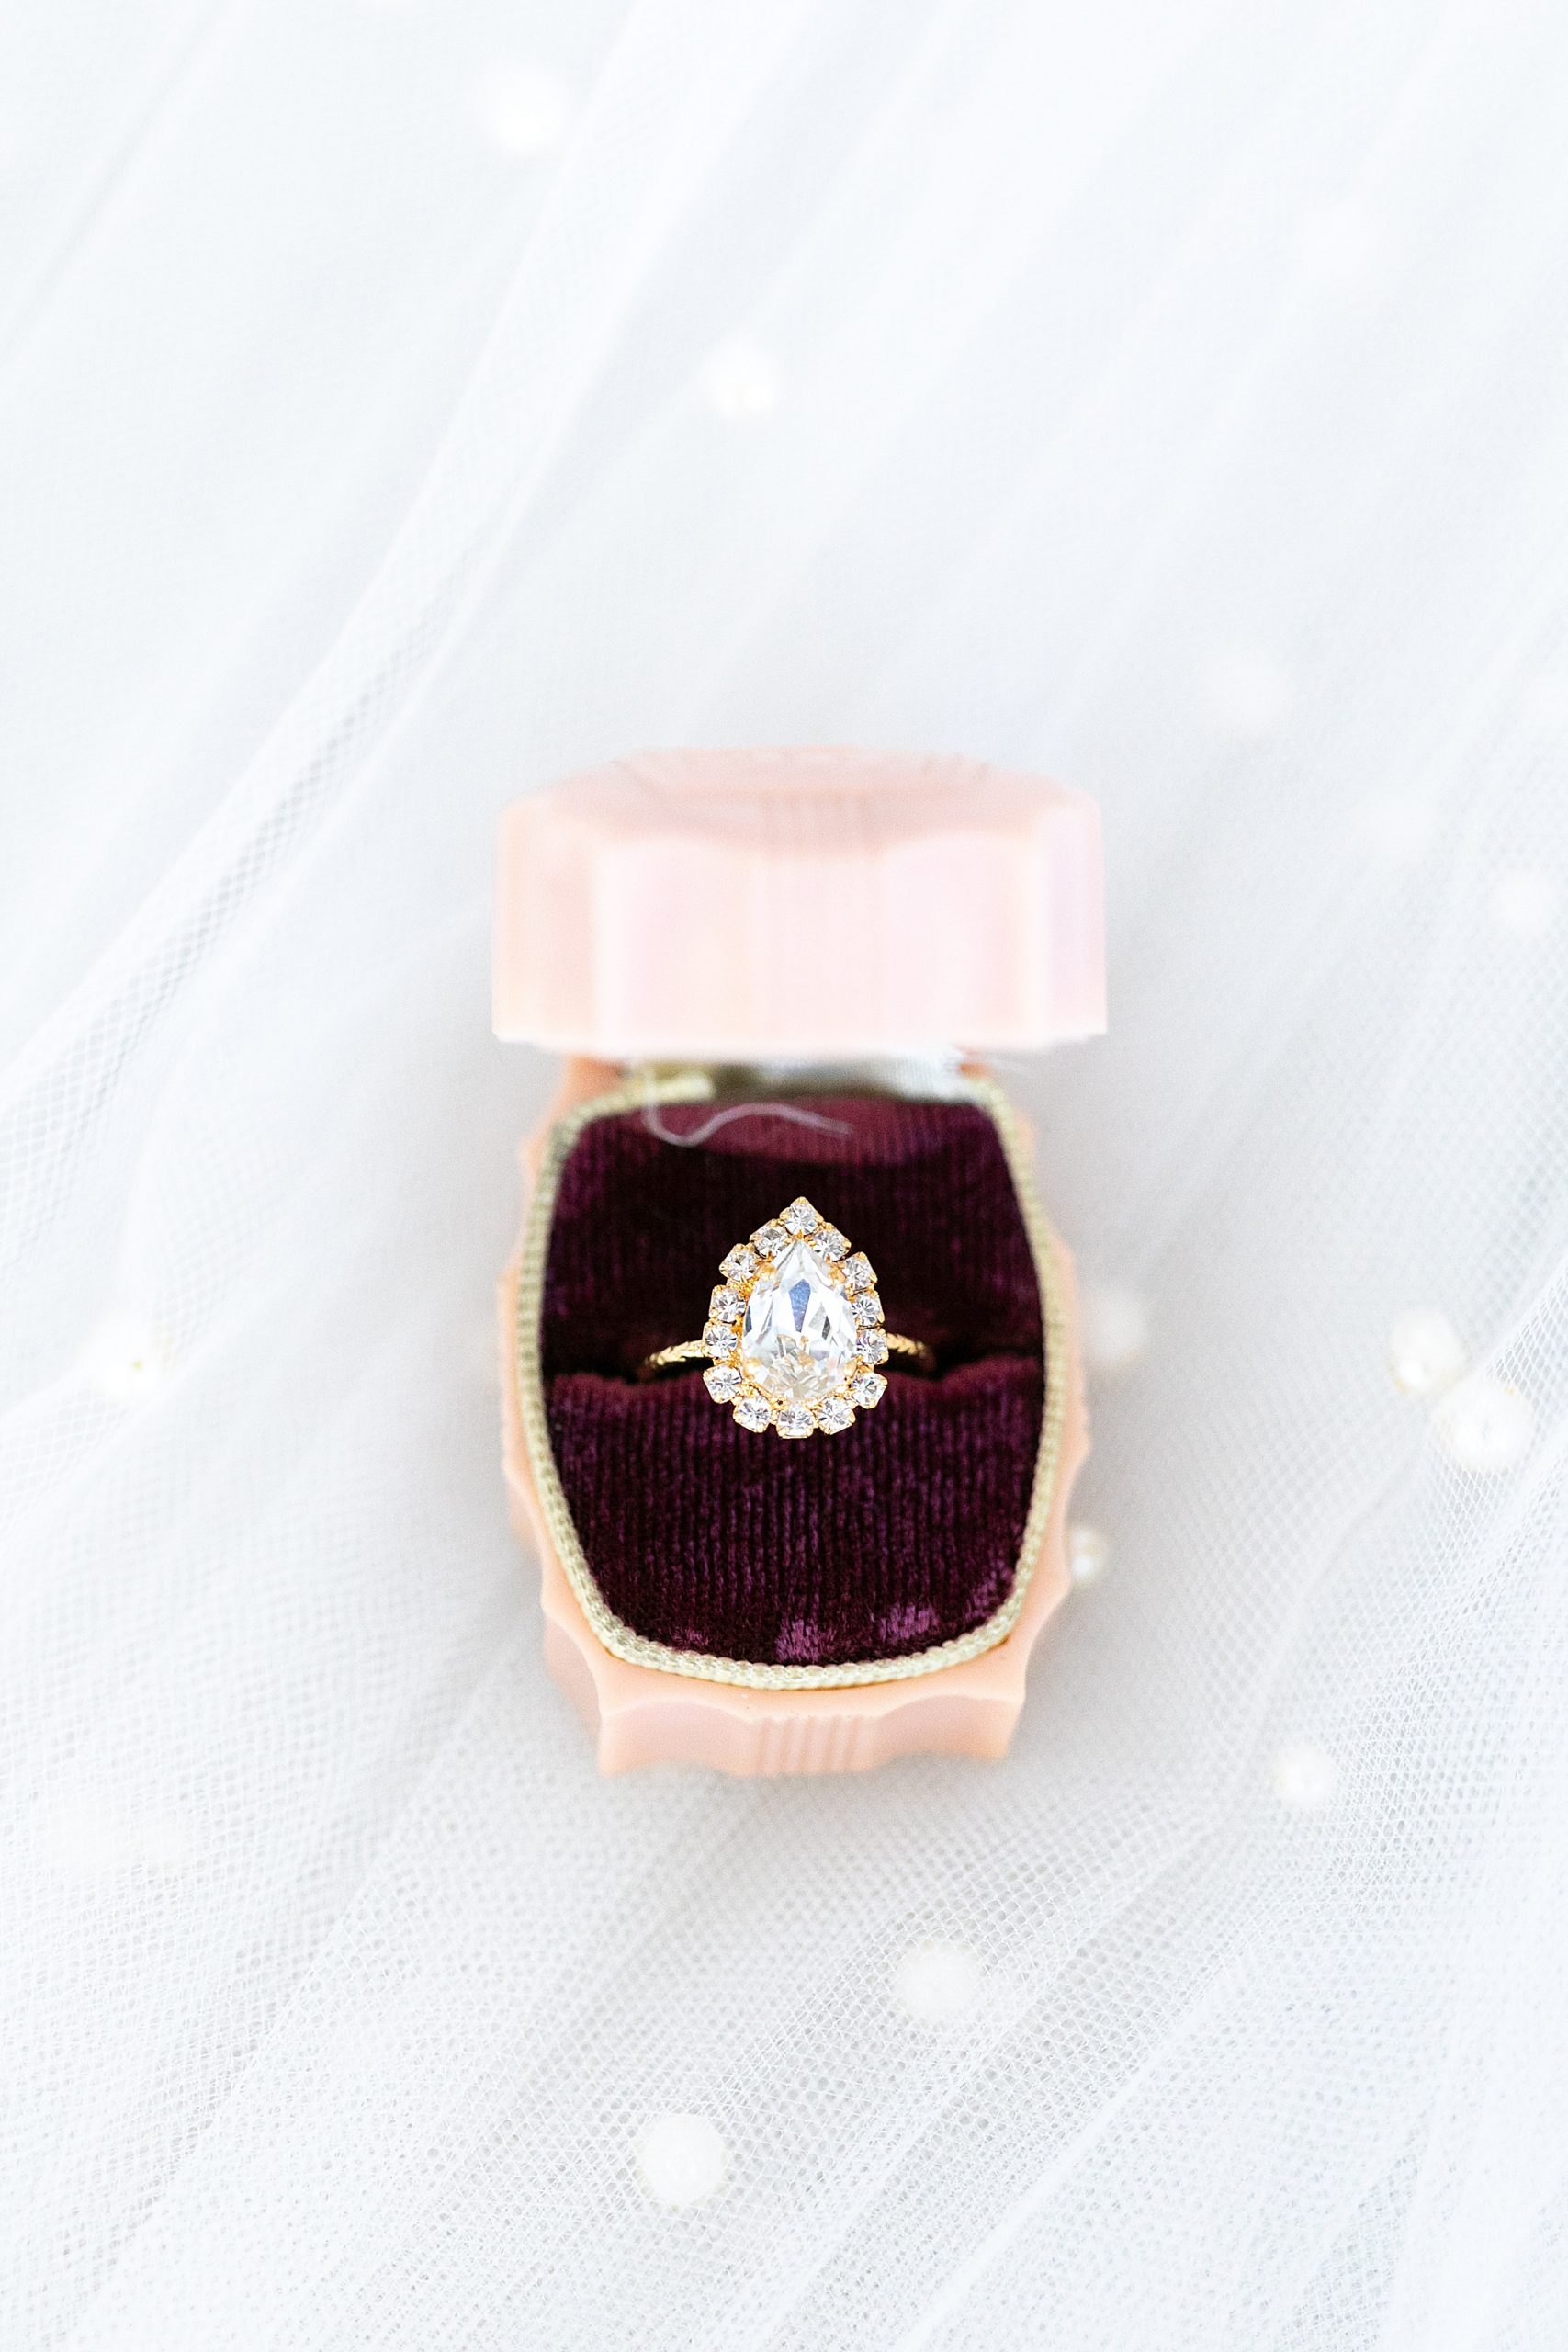 wedding ring in pastel pink box